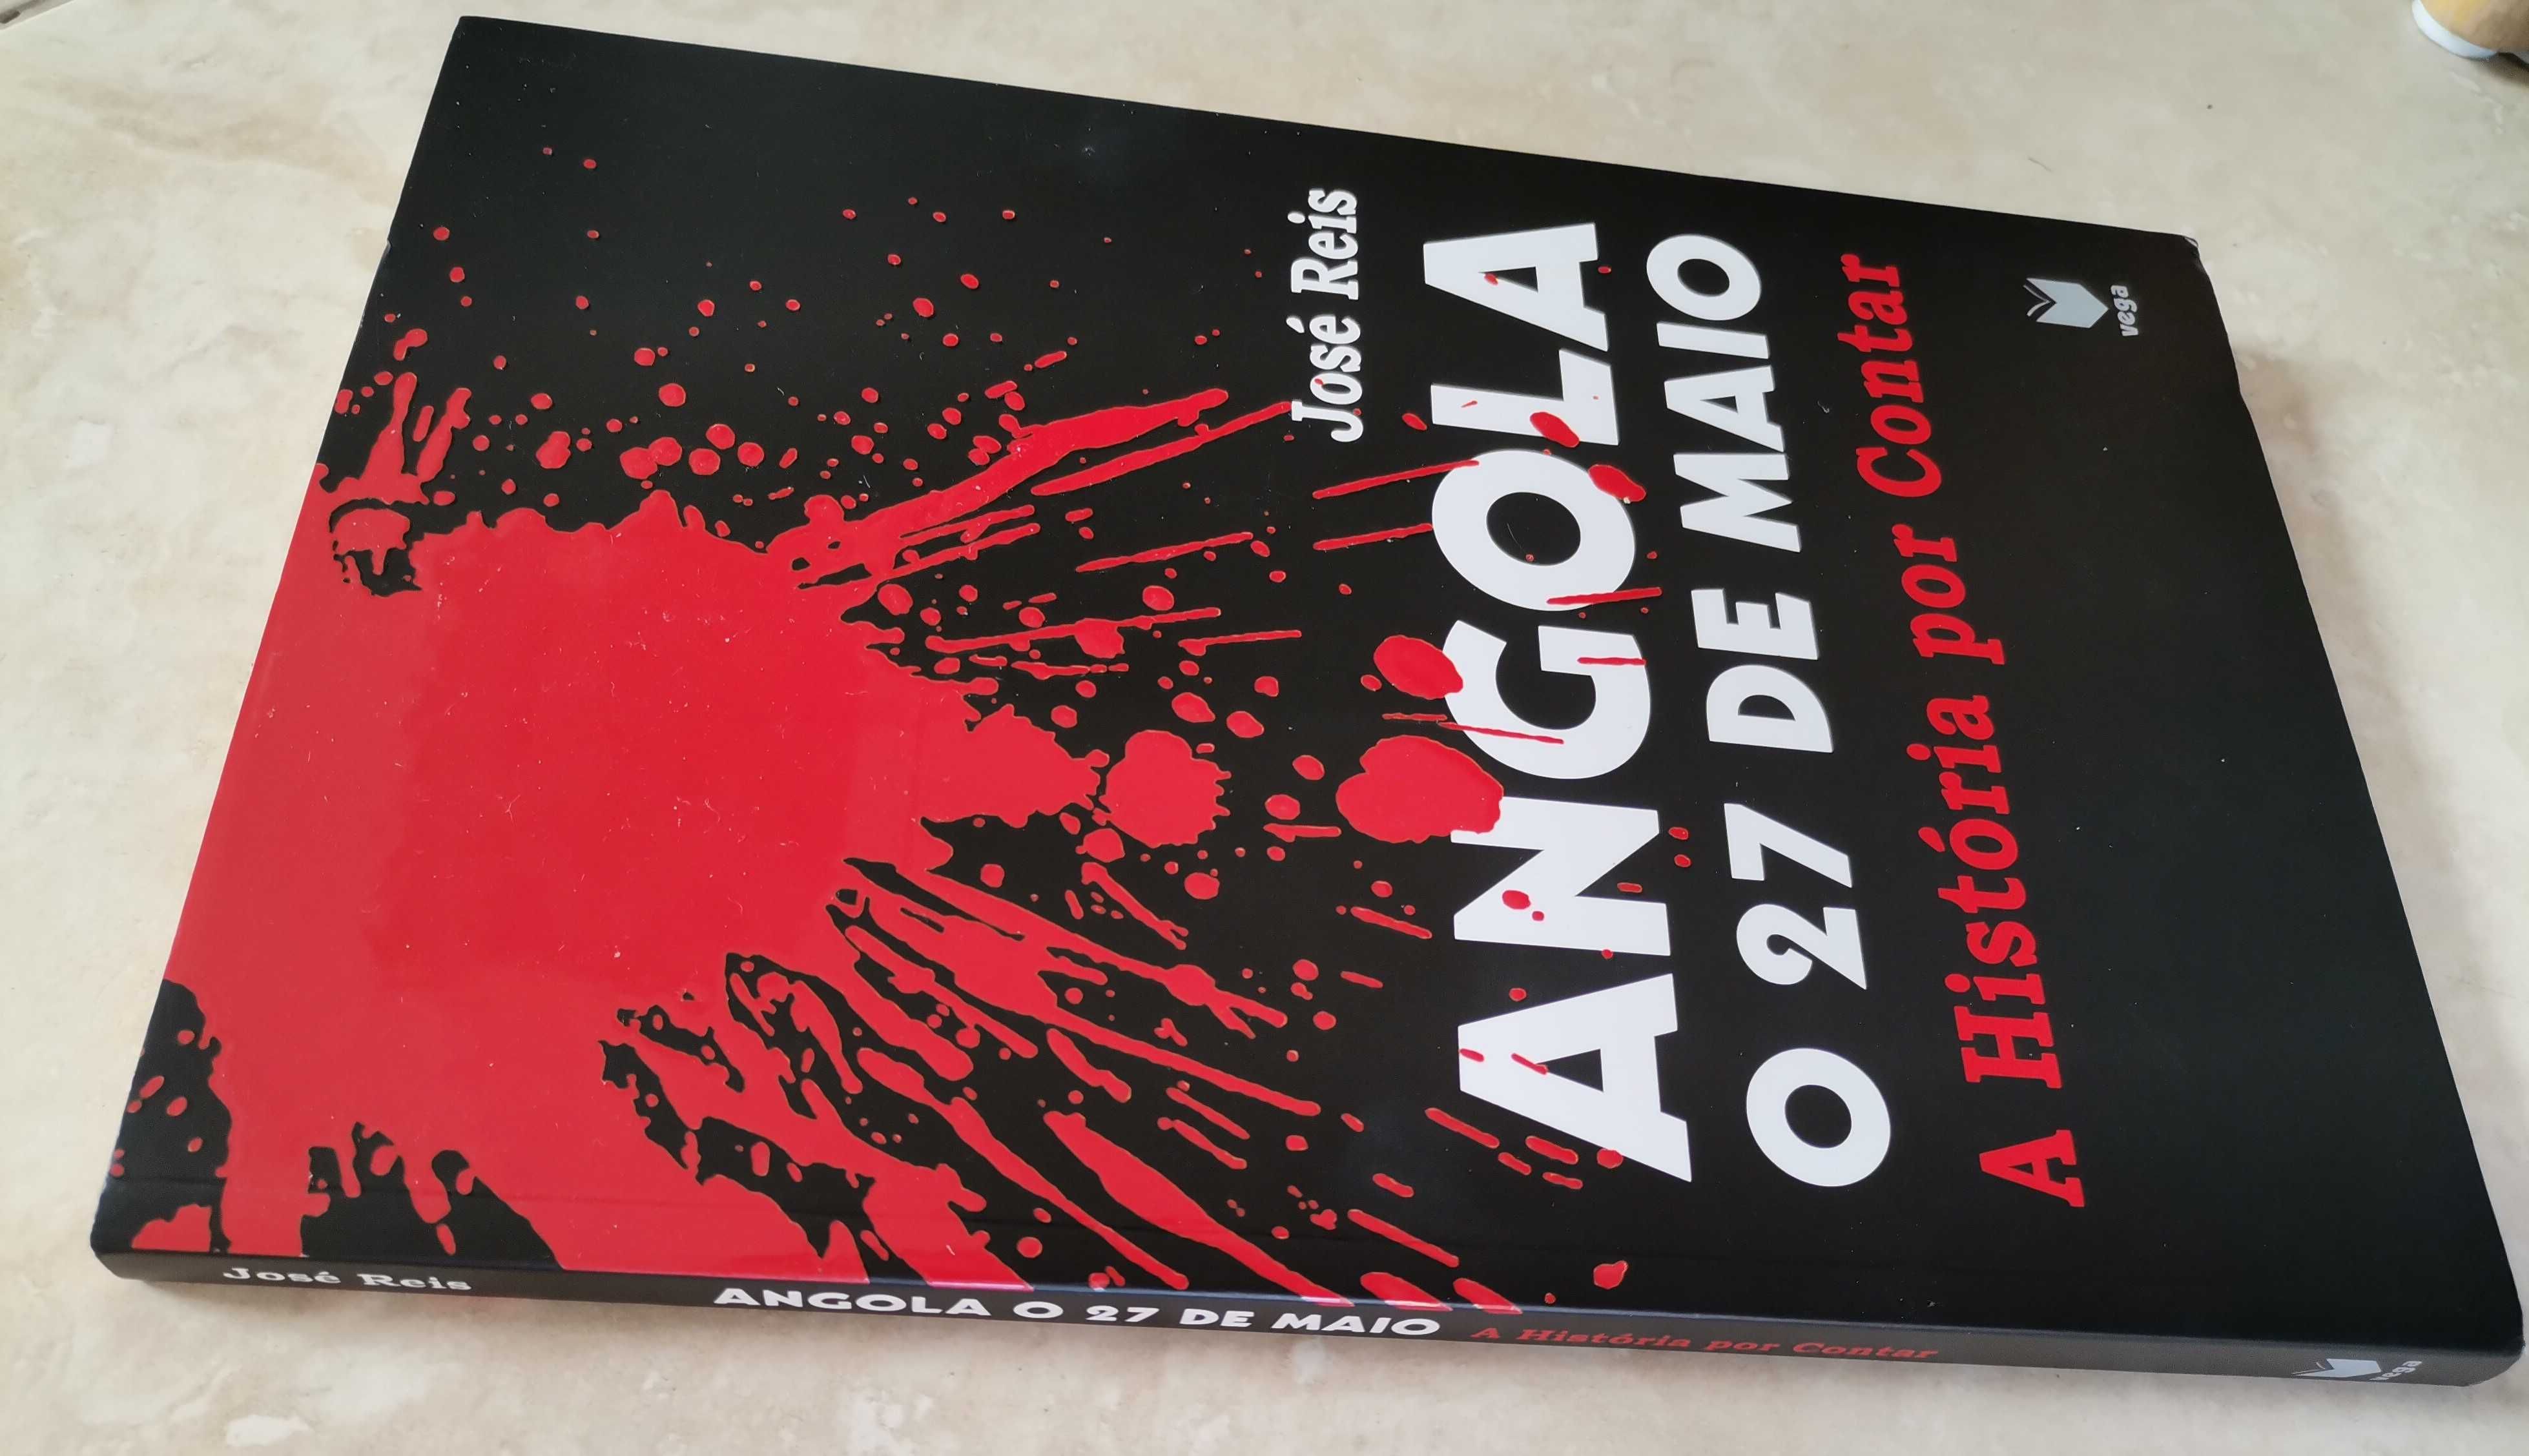 Portes Grátis - Angola - O 27 de Maio
A história por contar